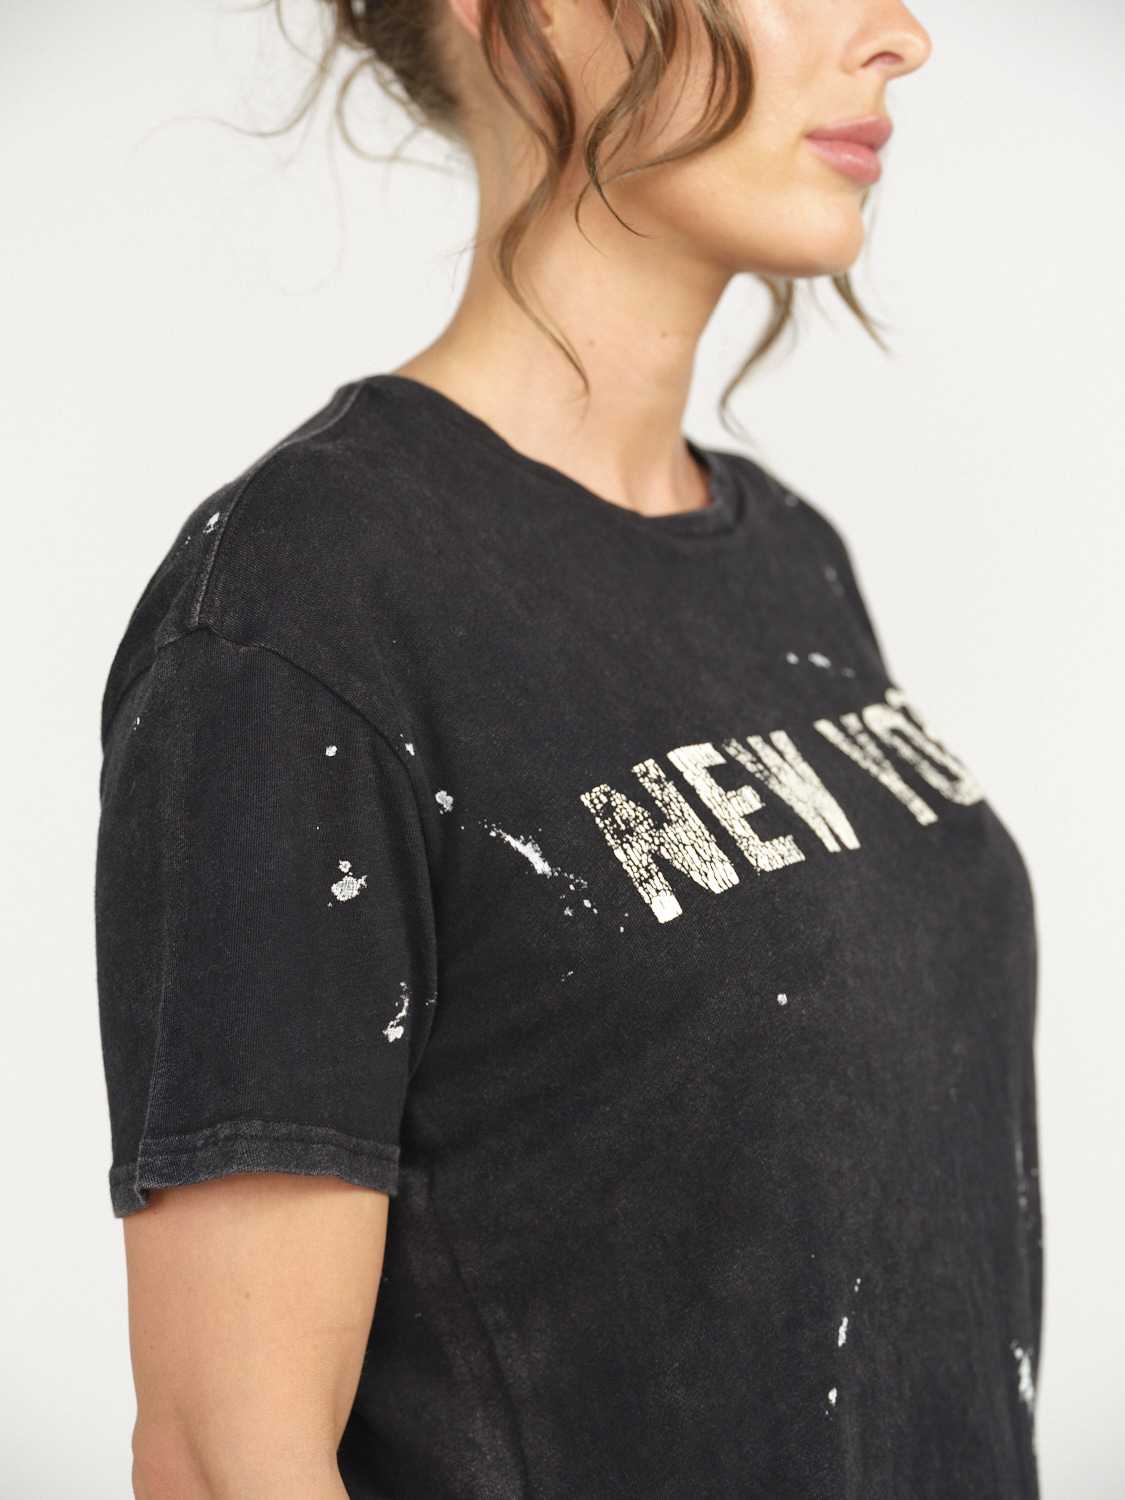 R13 New York Boy T-Shirt - Splatter shirt made of cotton  black XS